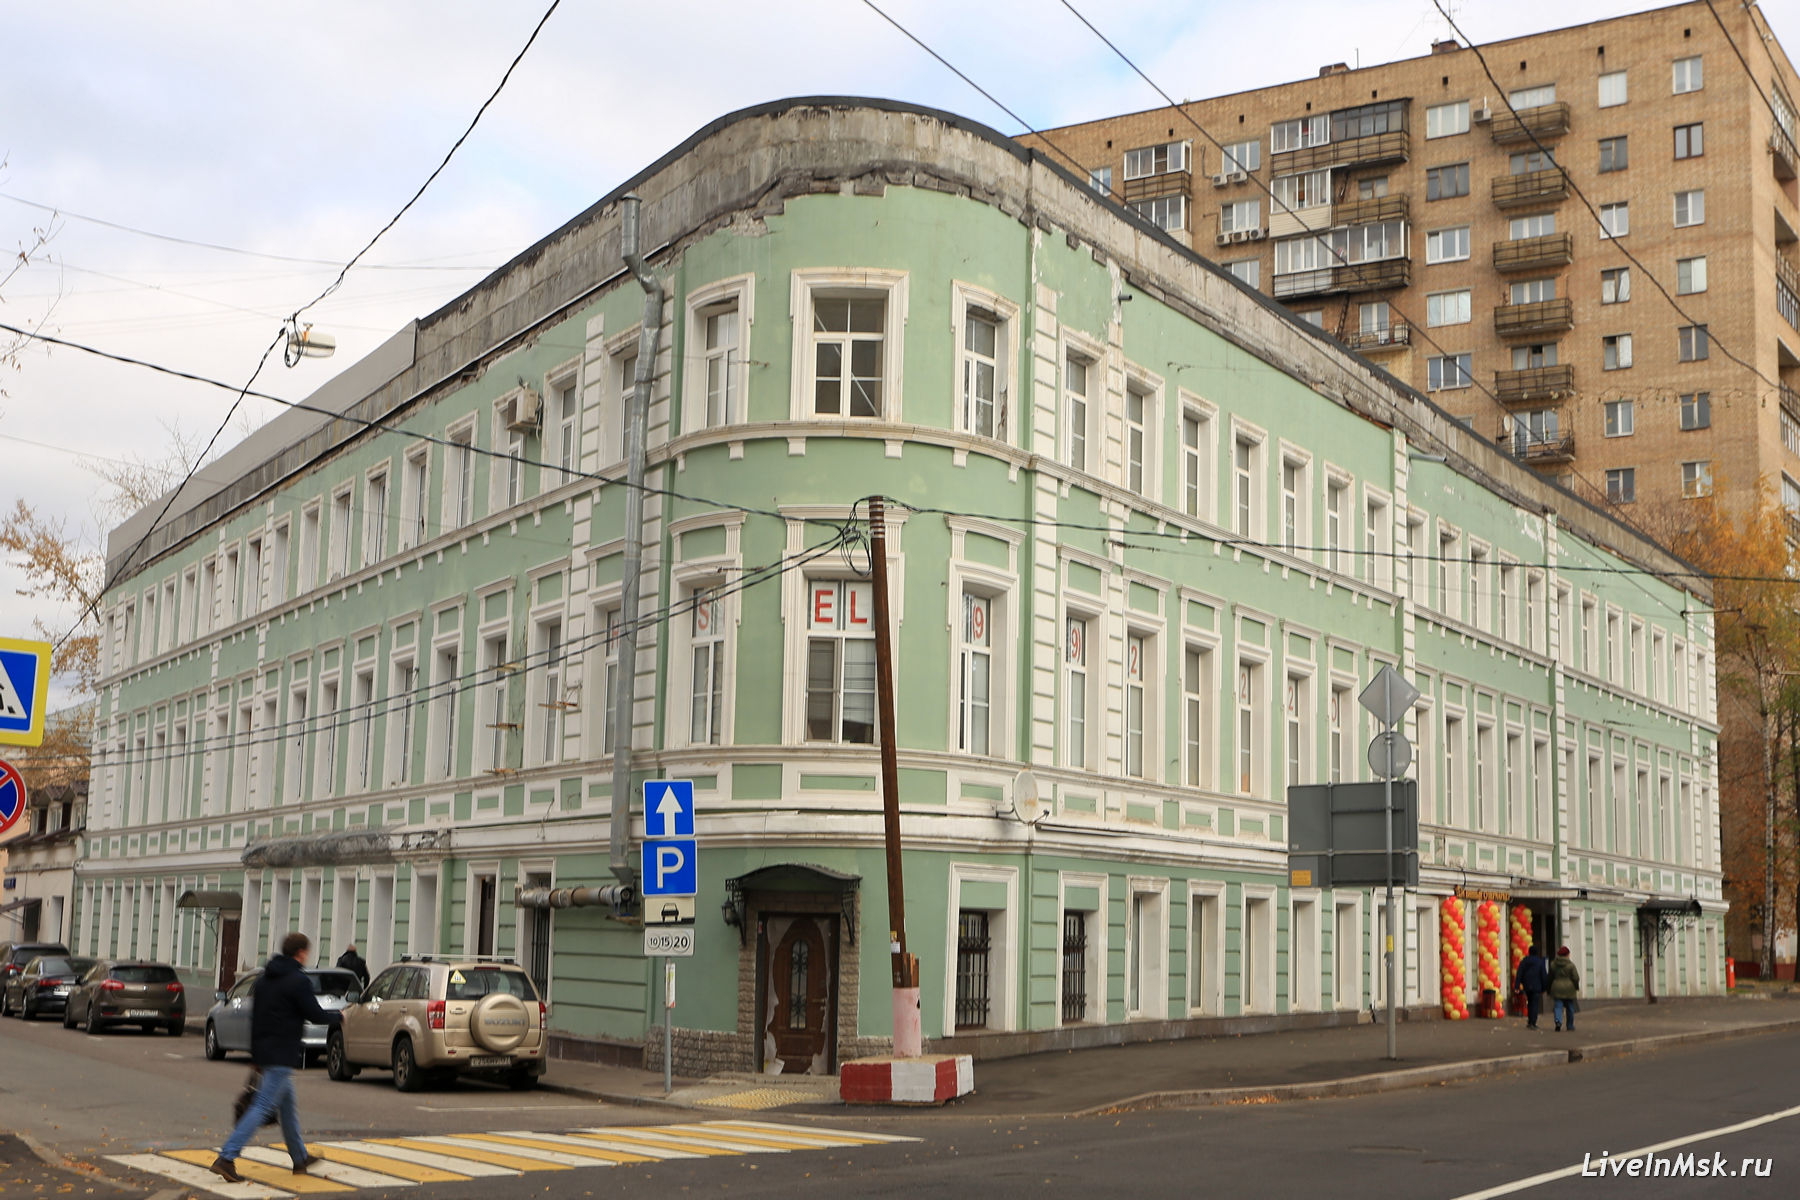 Дом Высоцкого на Басманной, фото 2018 года